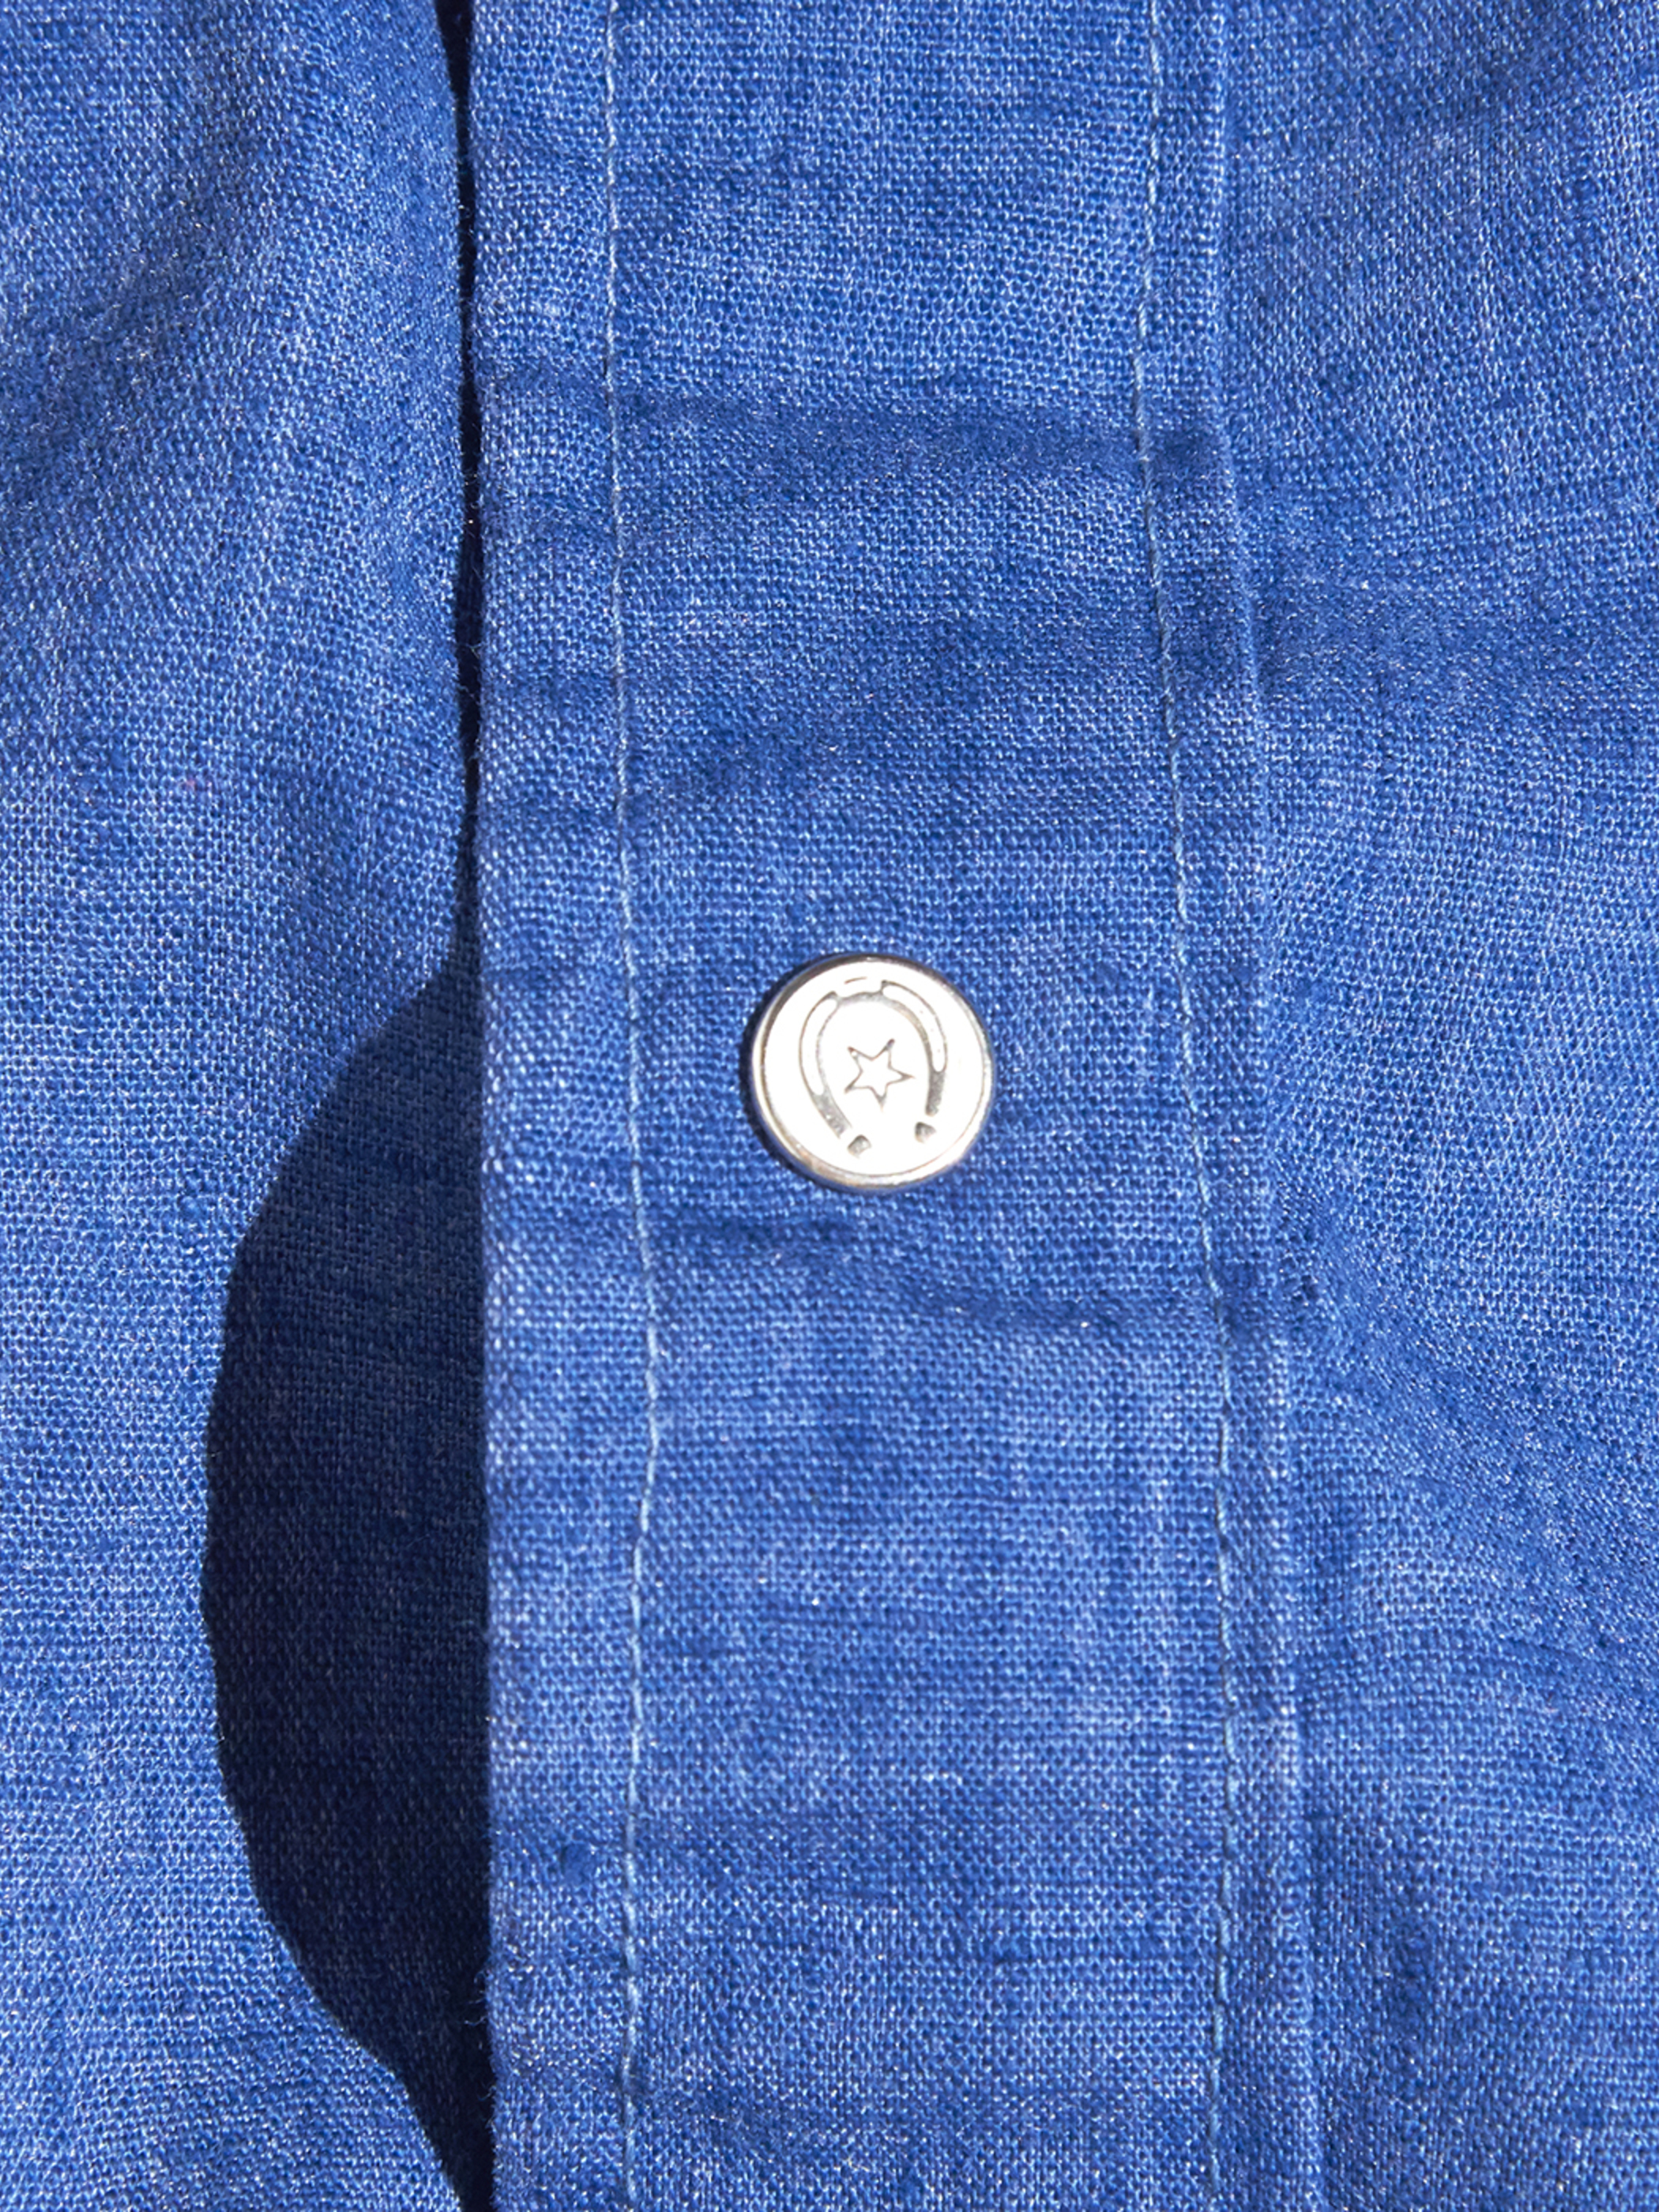 1960s "unknown" denim western shirt -BLUE- <SALE¥25000→¥20000>